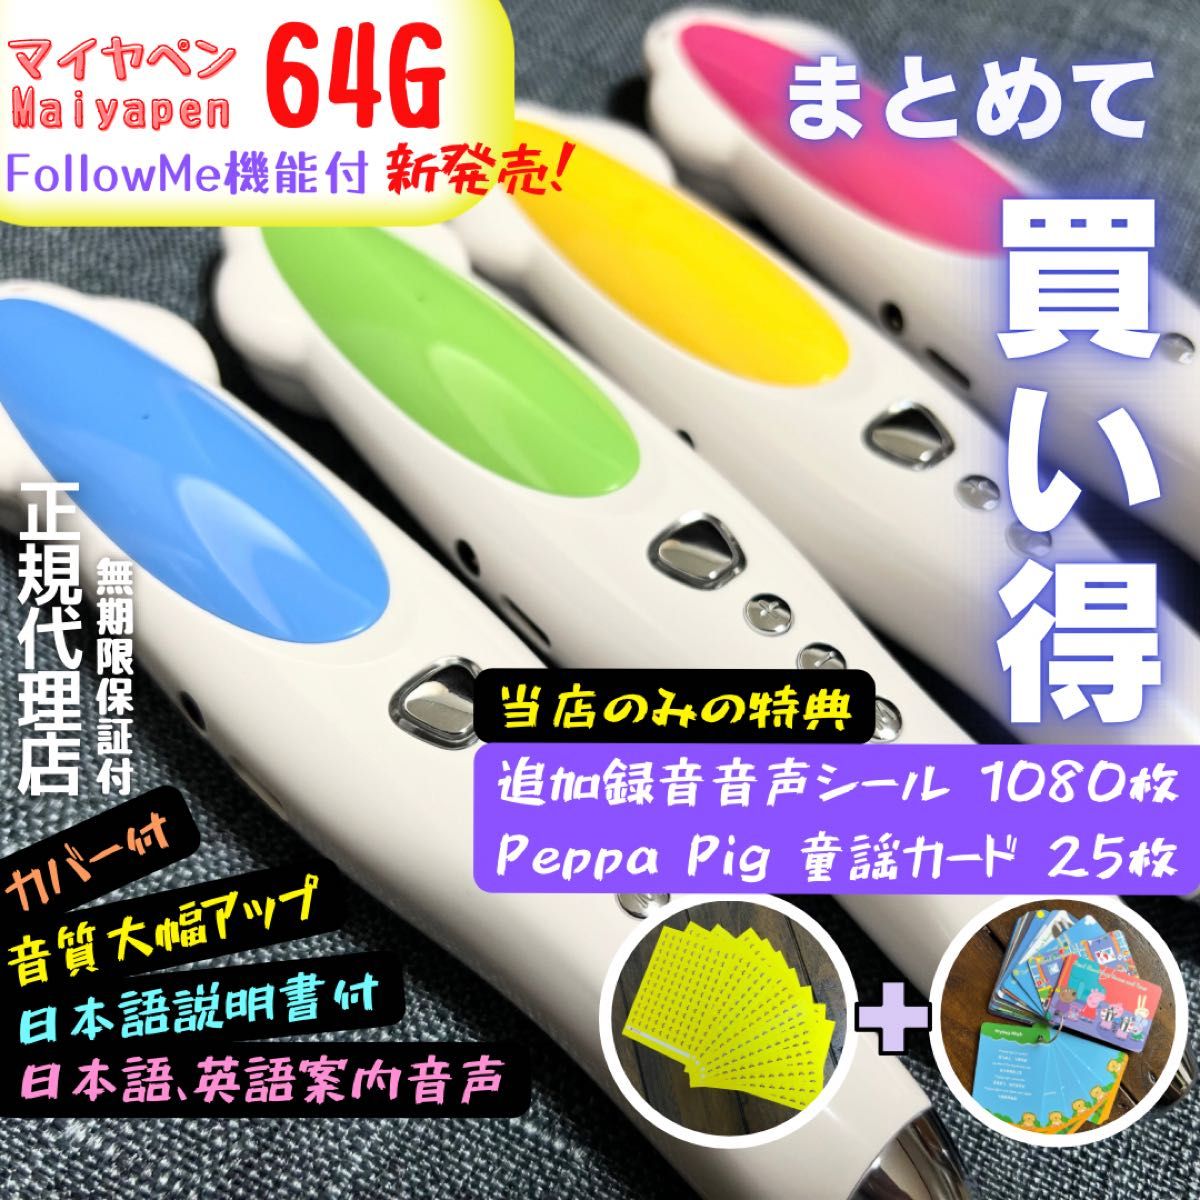 新発売 64Gマイヤペン 海外向け仕様 音質大幅アップ 日本語英語二つの案内音声